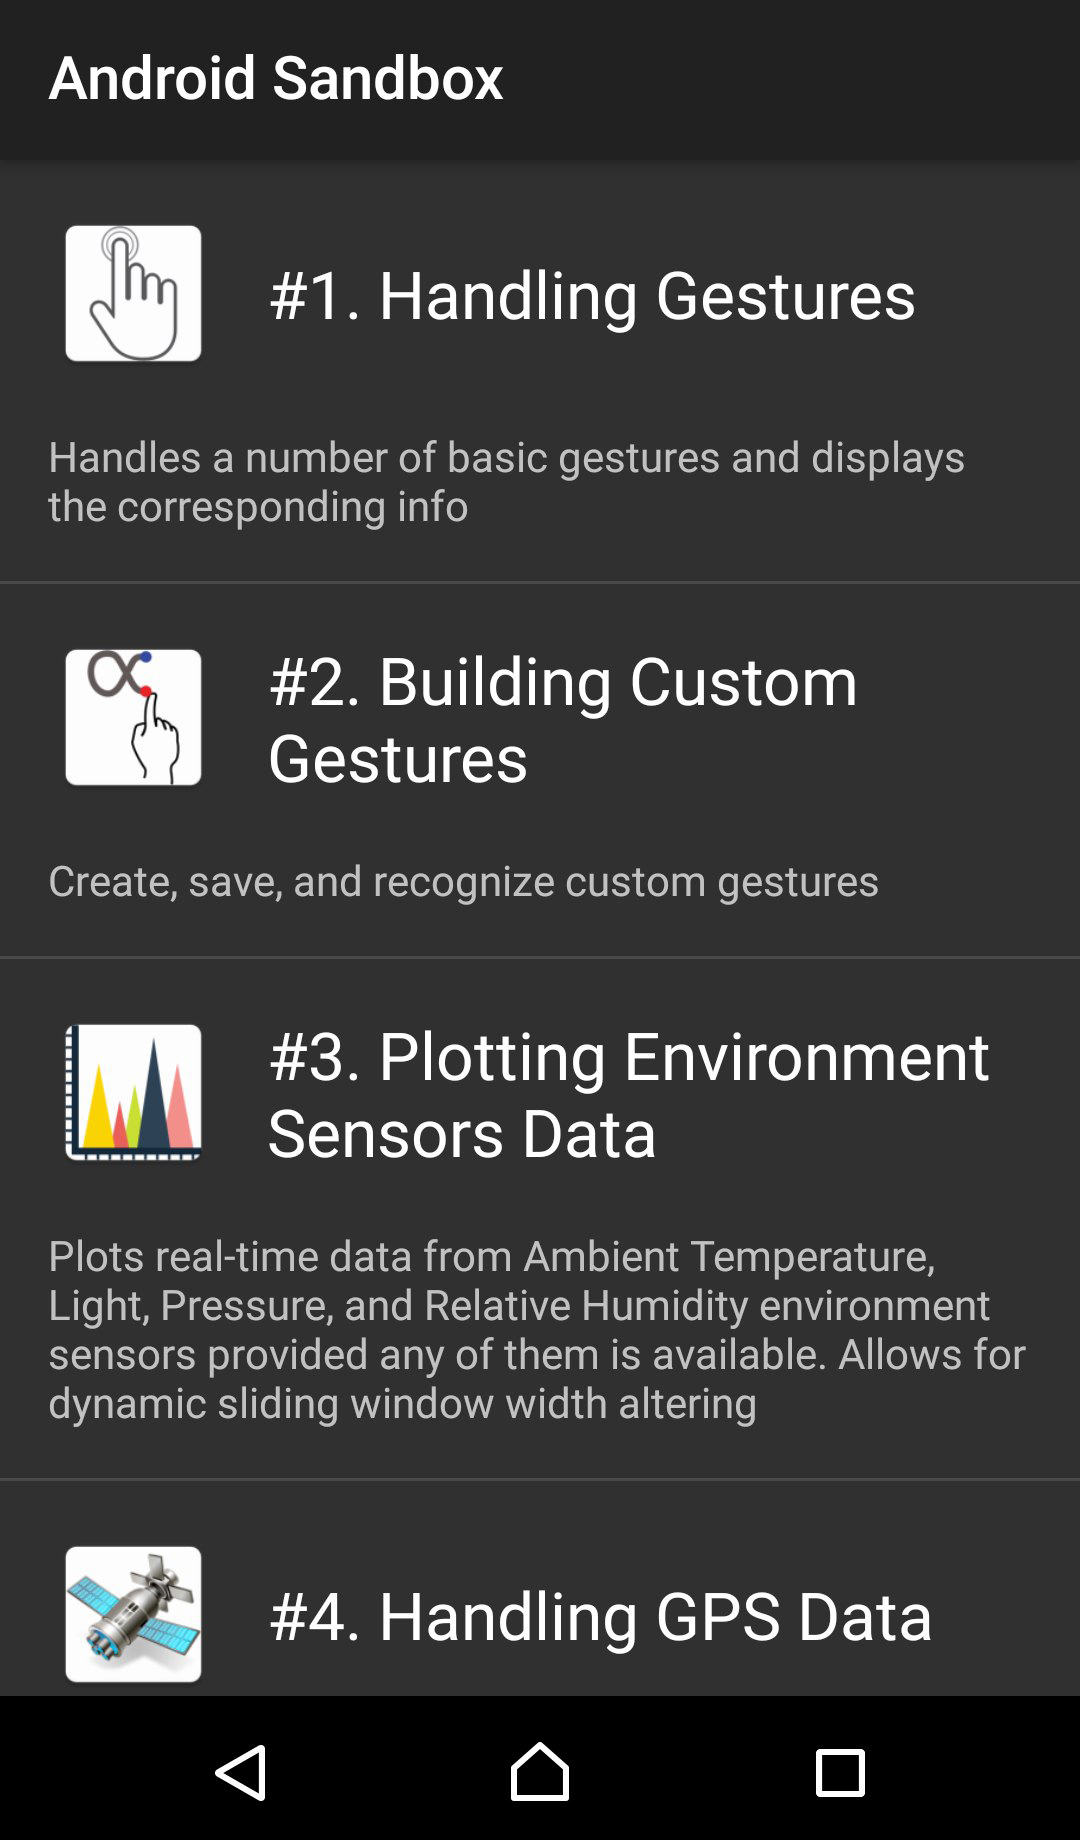 Android Sandbox application screenshot